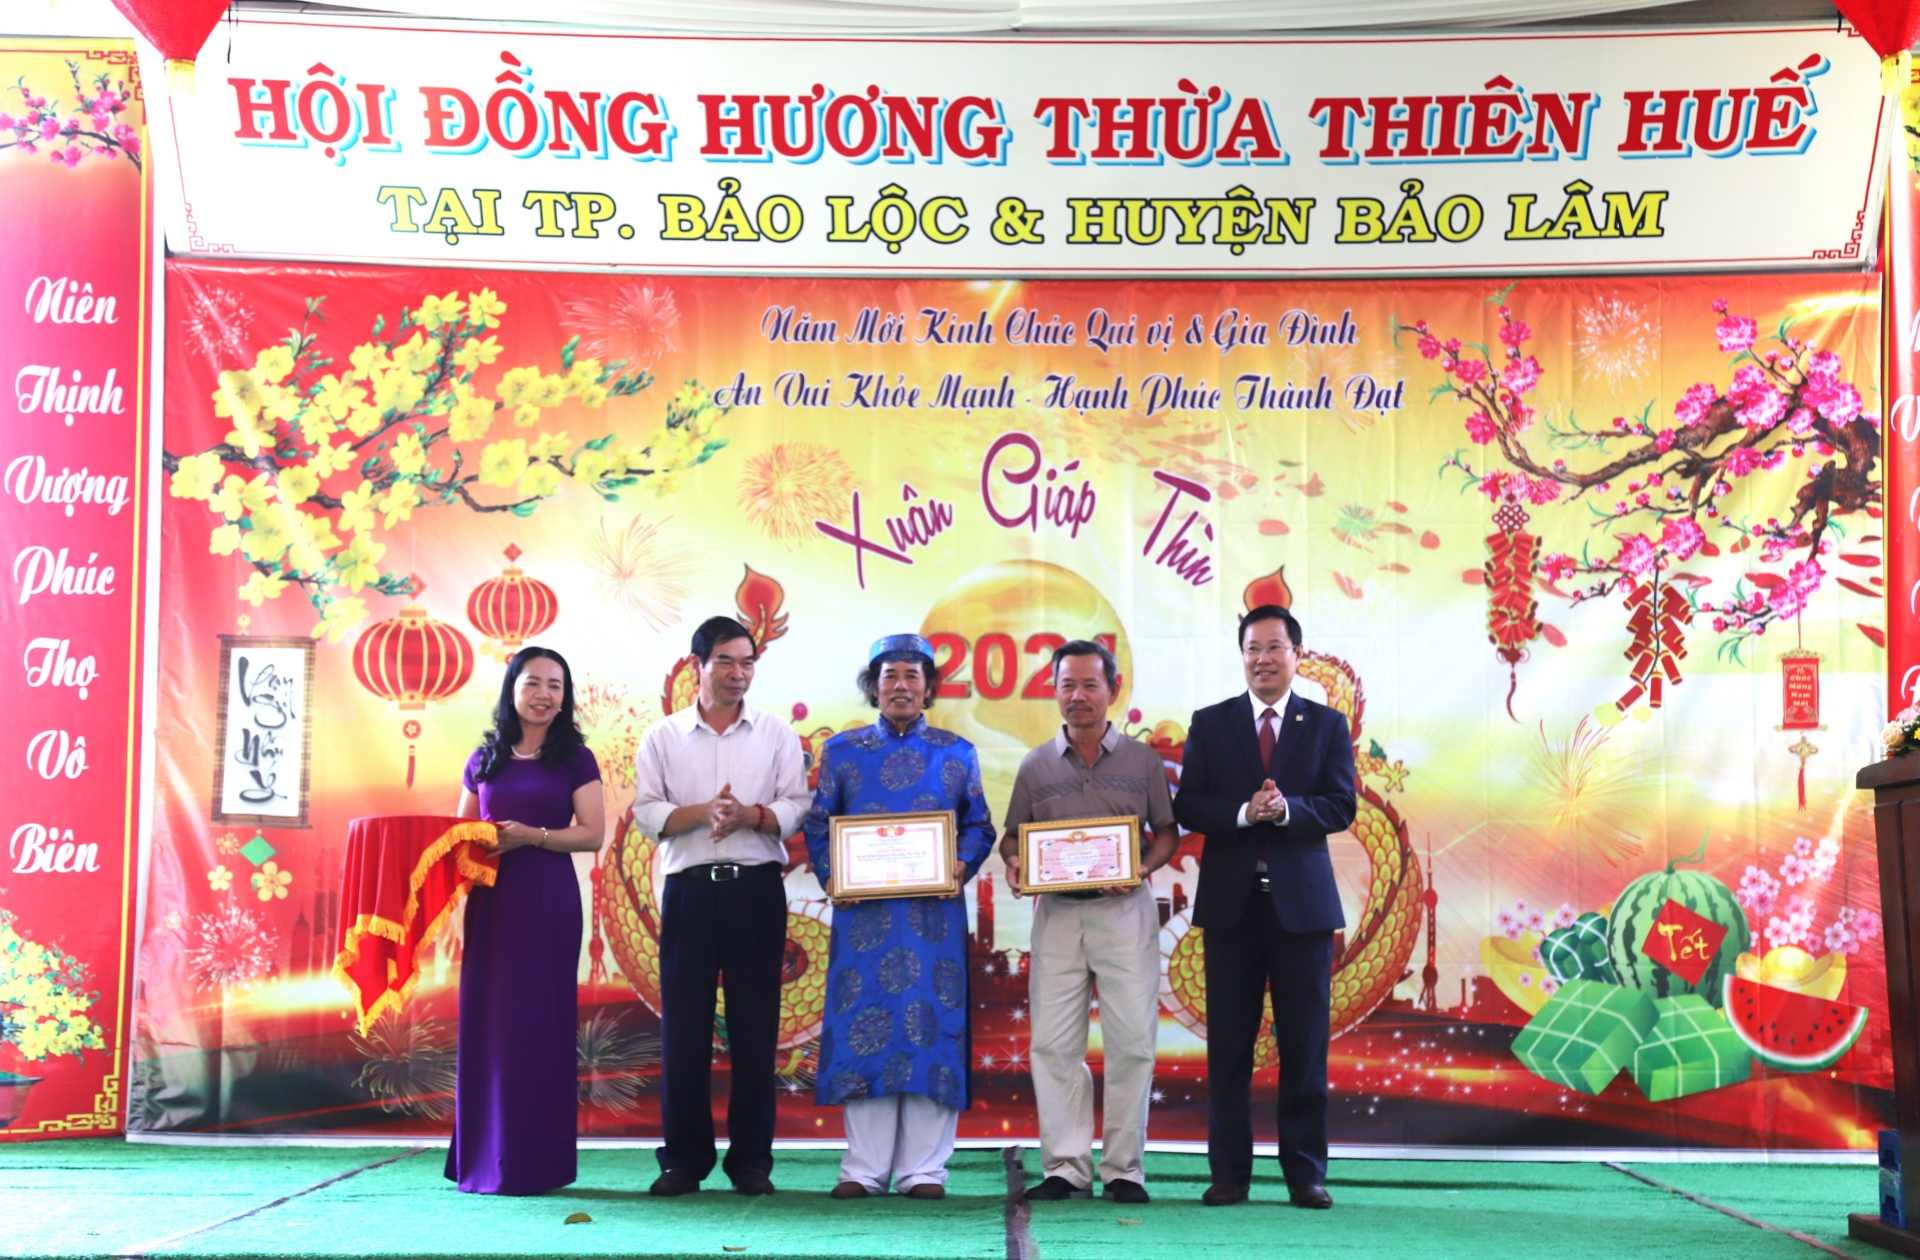 Đồng chí Phạm Triều - Chủ tịch Ủy ban MTTQ Việt Nam tỉnh Lâm Đồng trao giấy khen cho Hội đồng hương Thừa Thiên Huế